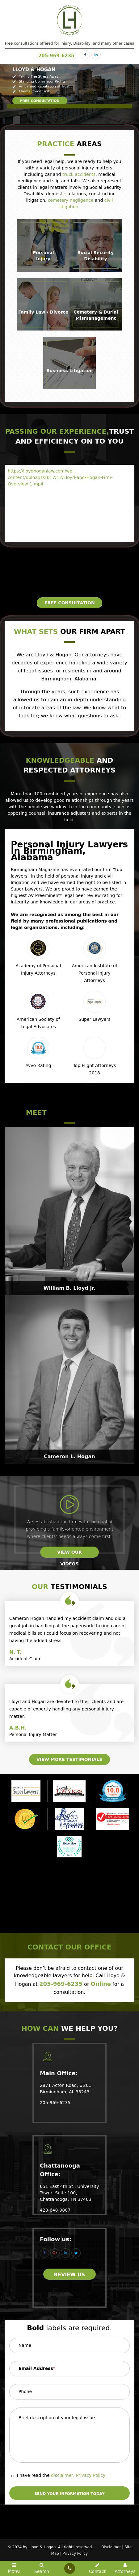 Lloyd & Hogan - Birmingham AL Lawyers